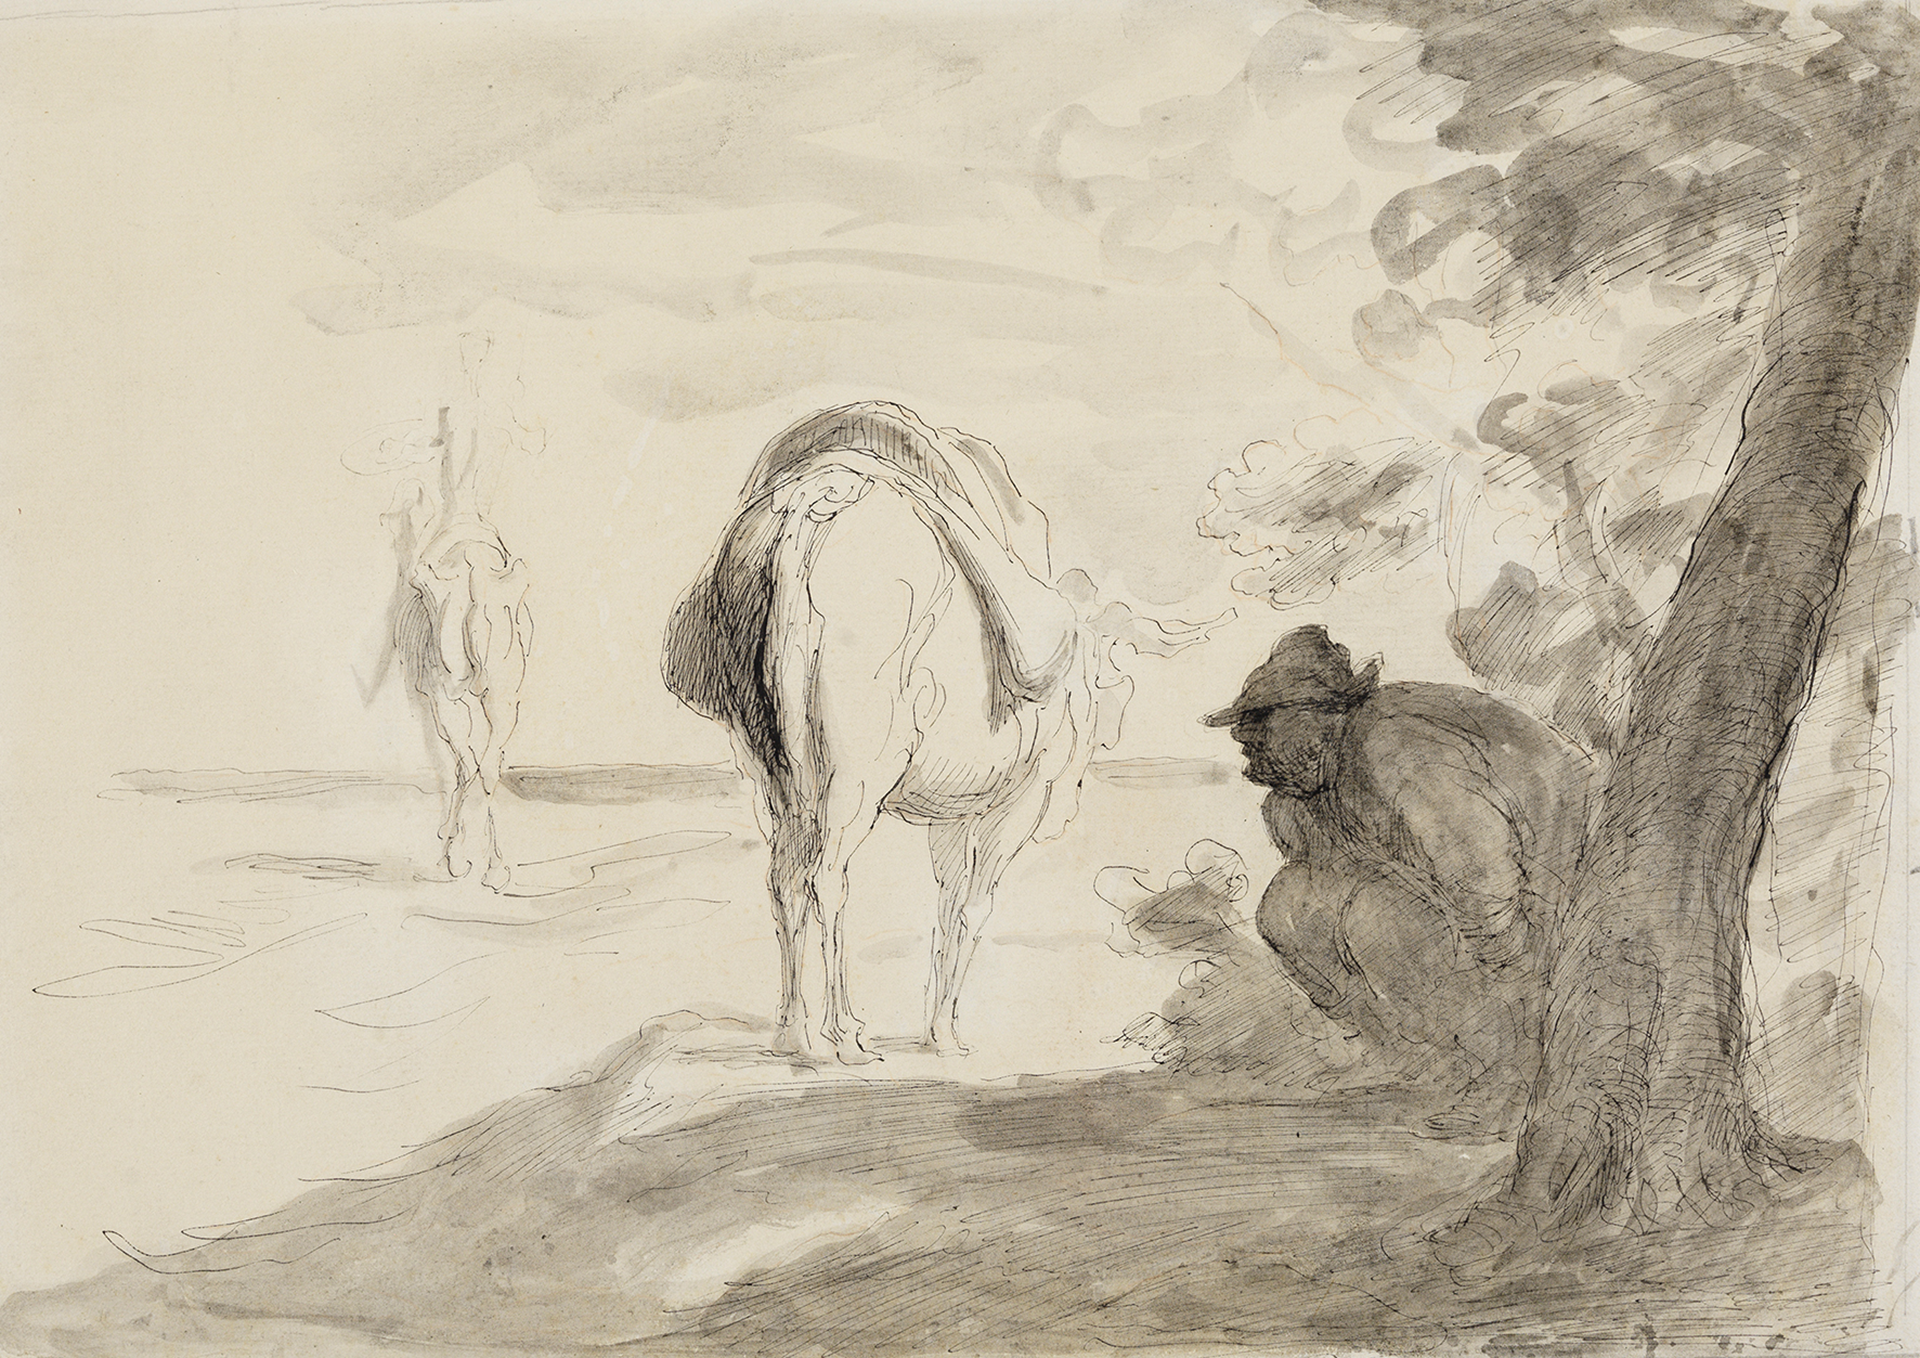 Federzeichnung eines an einem Baum hockenden Mannes sowie einem Esel